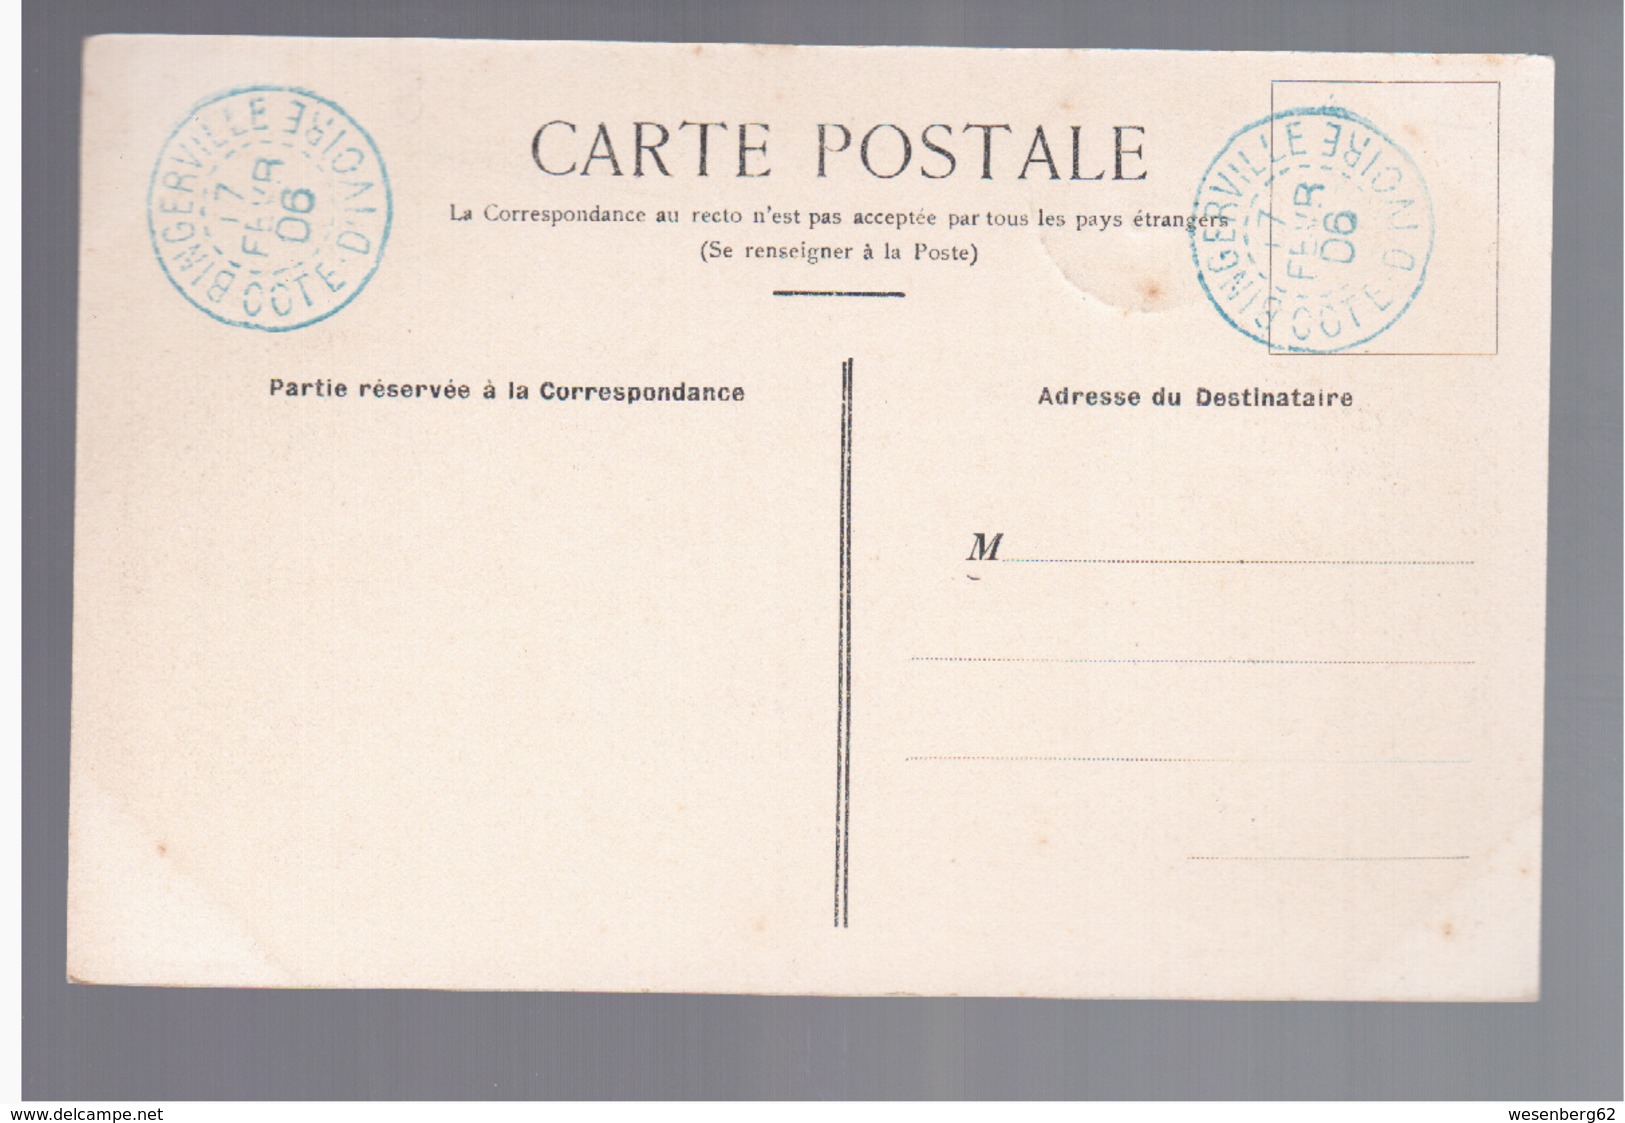 Cote D'Ivoire Sur Le Fleuve Comoe- Poste De Bettie 1906 OLD POSTCARD - Côte-d'Ivoire